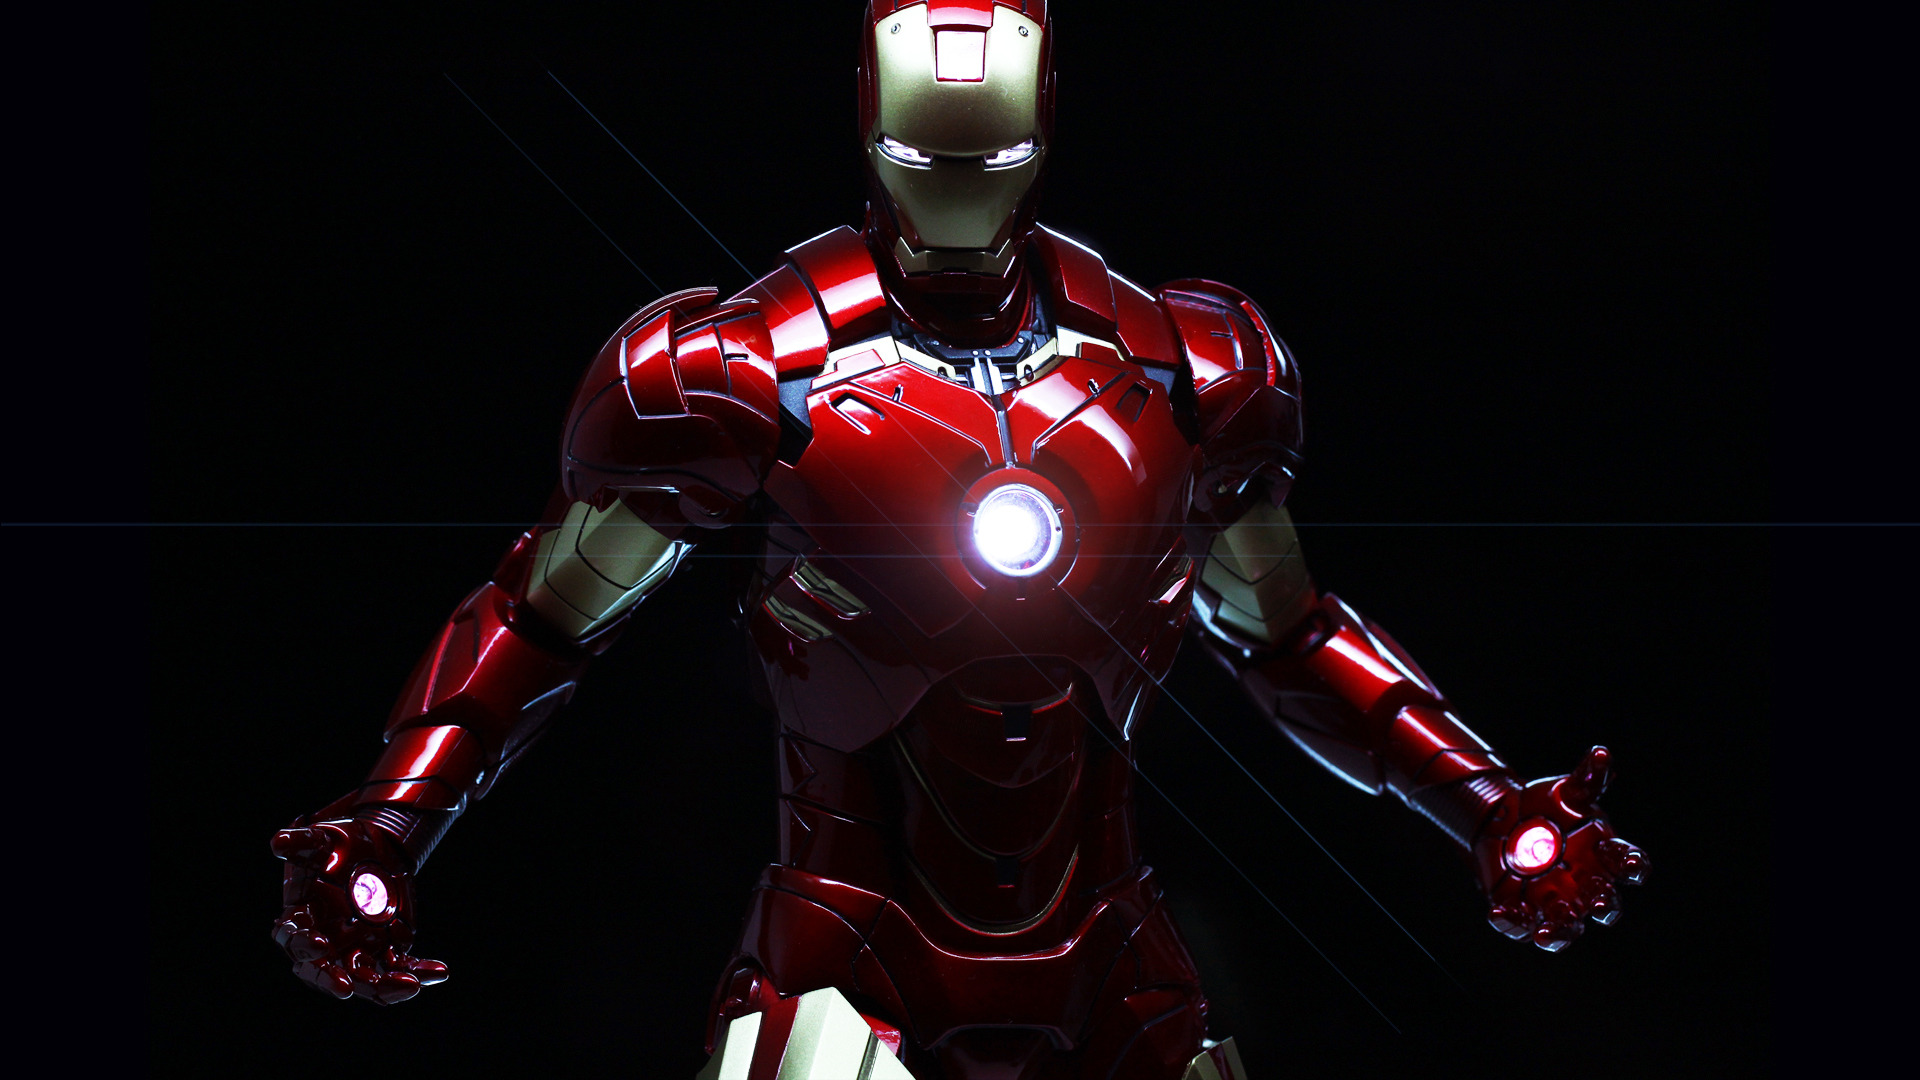 Những hình nền Iron Man có độ phân giải cao nhất đang chờ bạn khám phá! Với thiết kế sáng tạo và đẹp đến ngỡ ngàng, những hình nền mới nhất thuộc thương hiệu POPPY sẽ làm hài lòng người dùng khó tính nhất. Hãy tham gia ngay để cập nhật những bản thiết kế mới nhất!